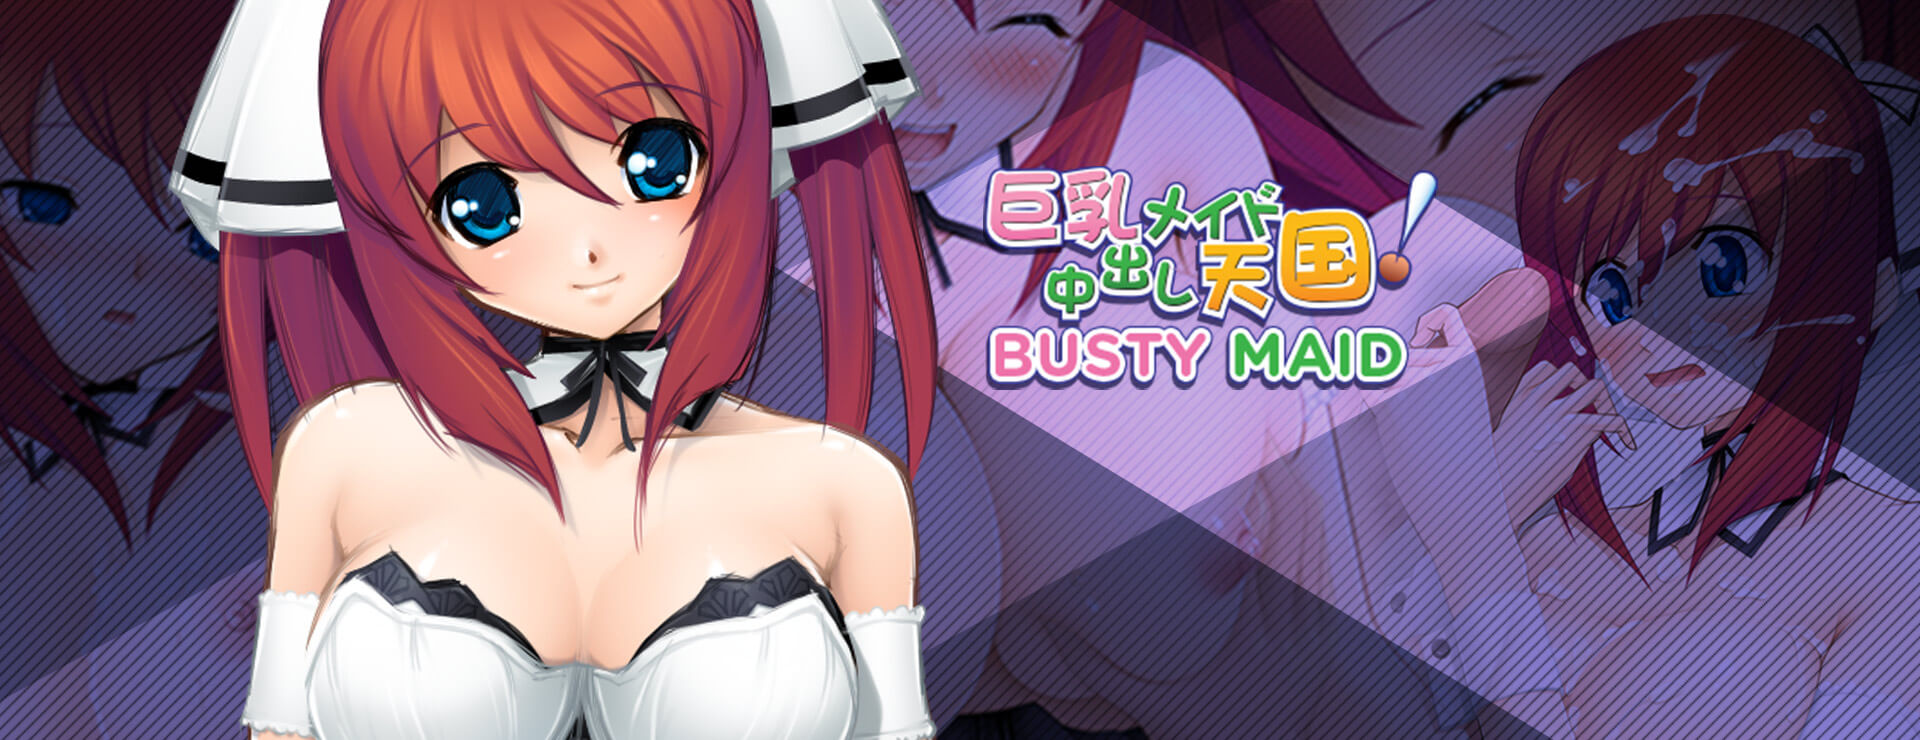 Busty Maid - Japanisches Adventure Spiel